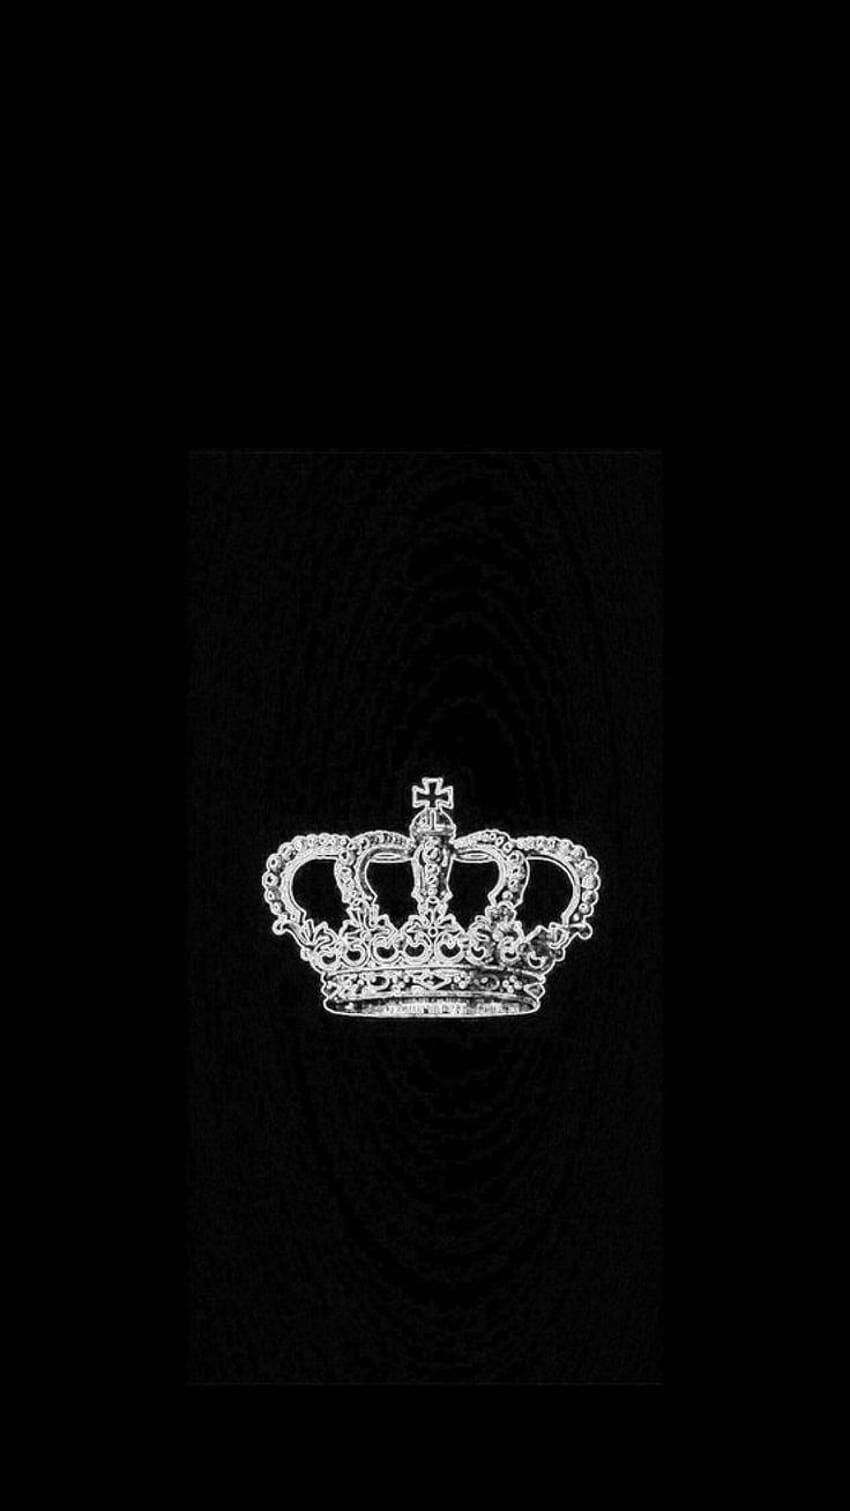 King And Queen, black queens HD phone wallpaper | Pxfuel